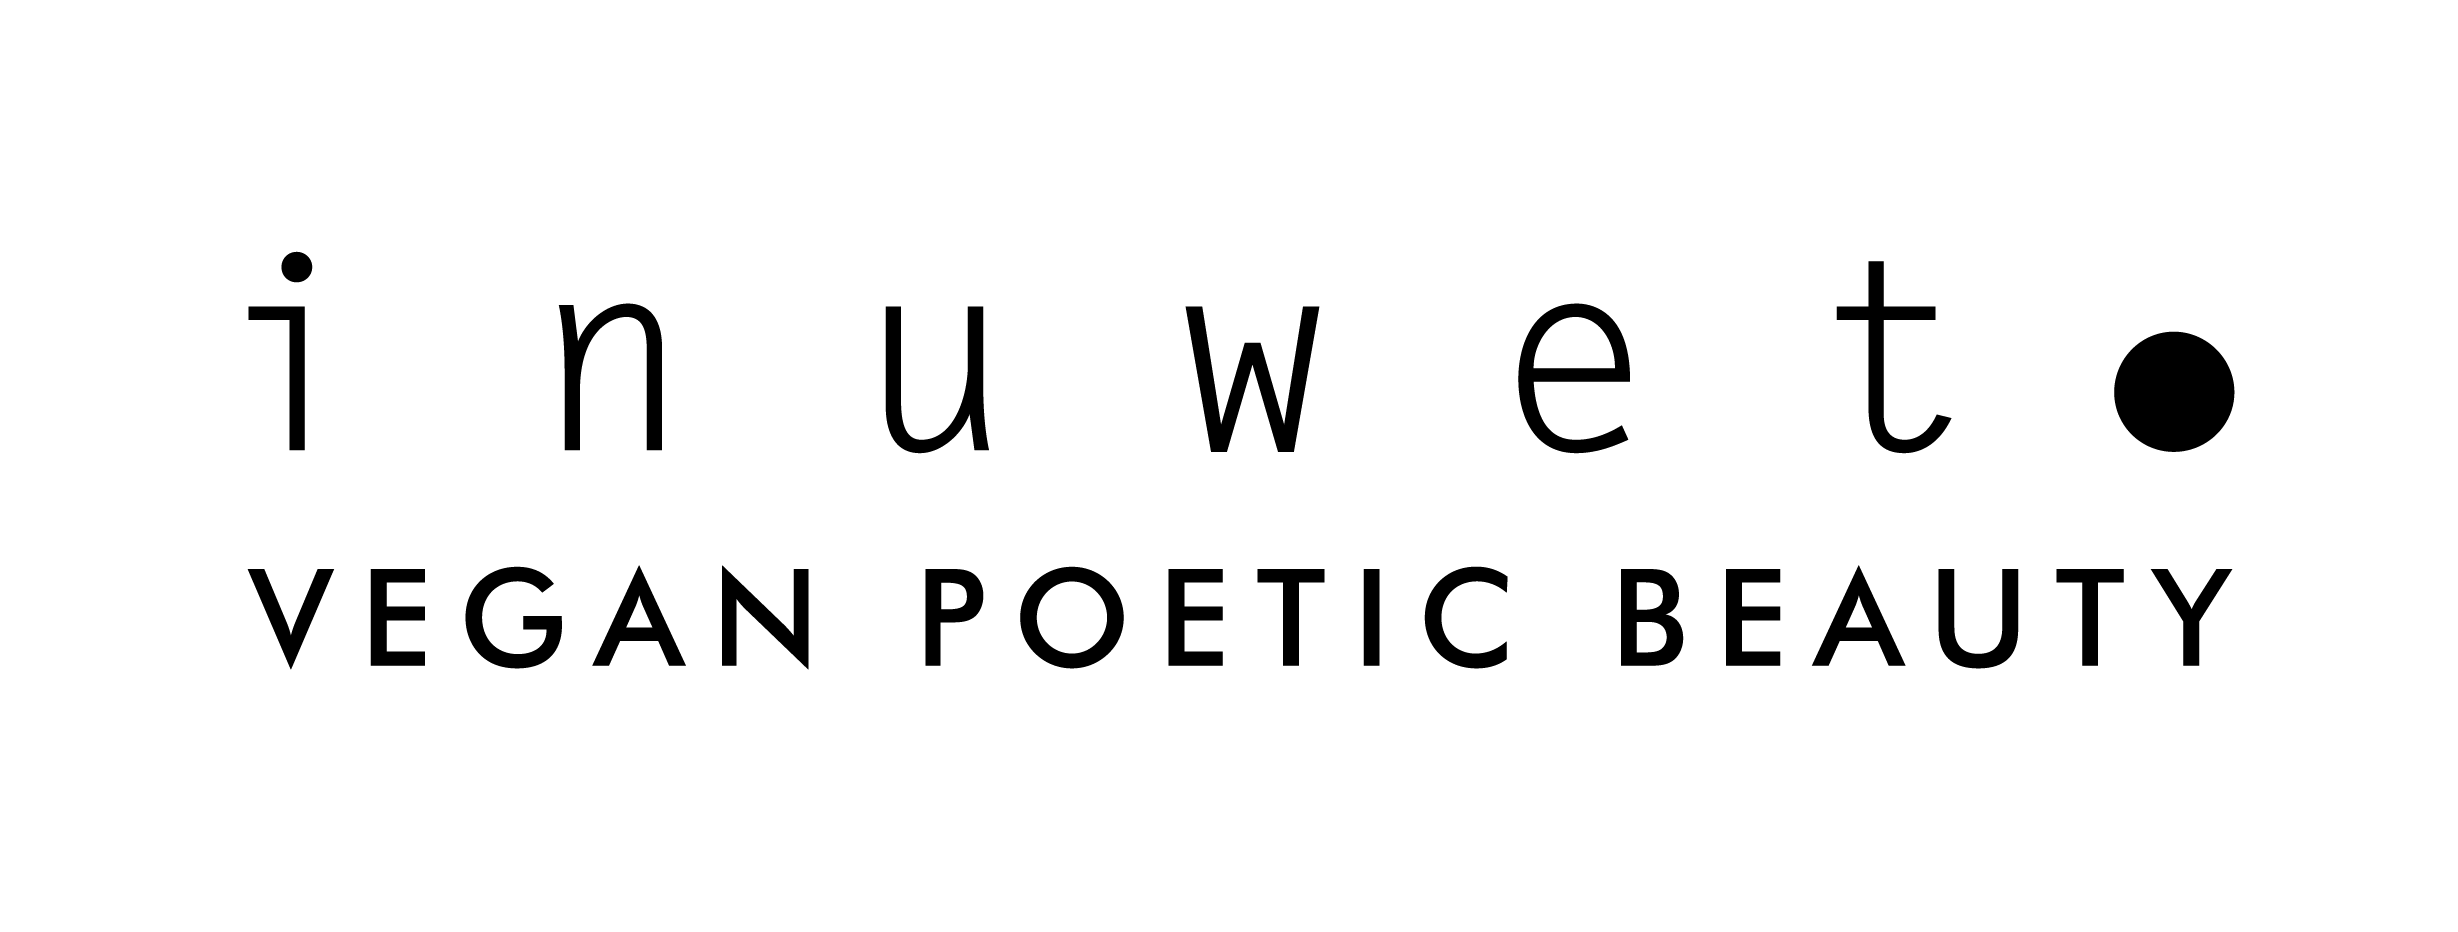 Inuwet logo